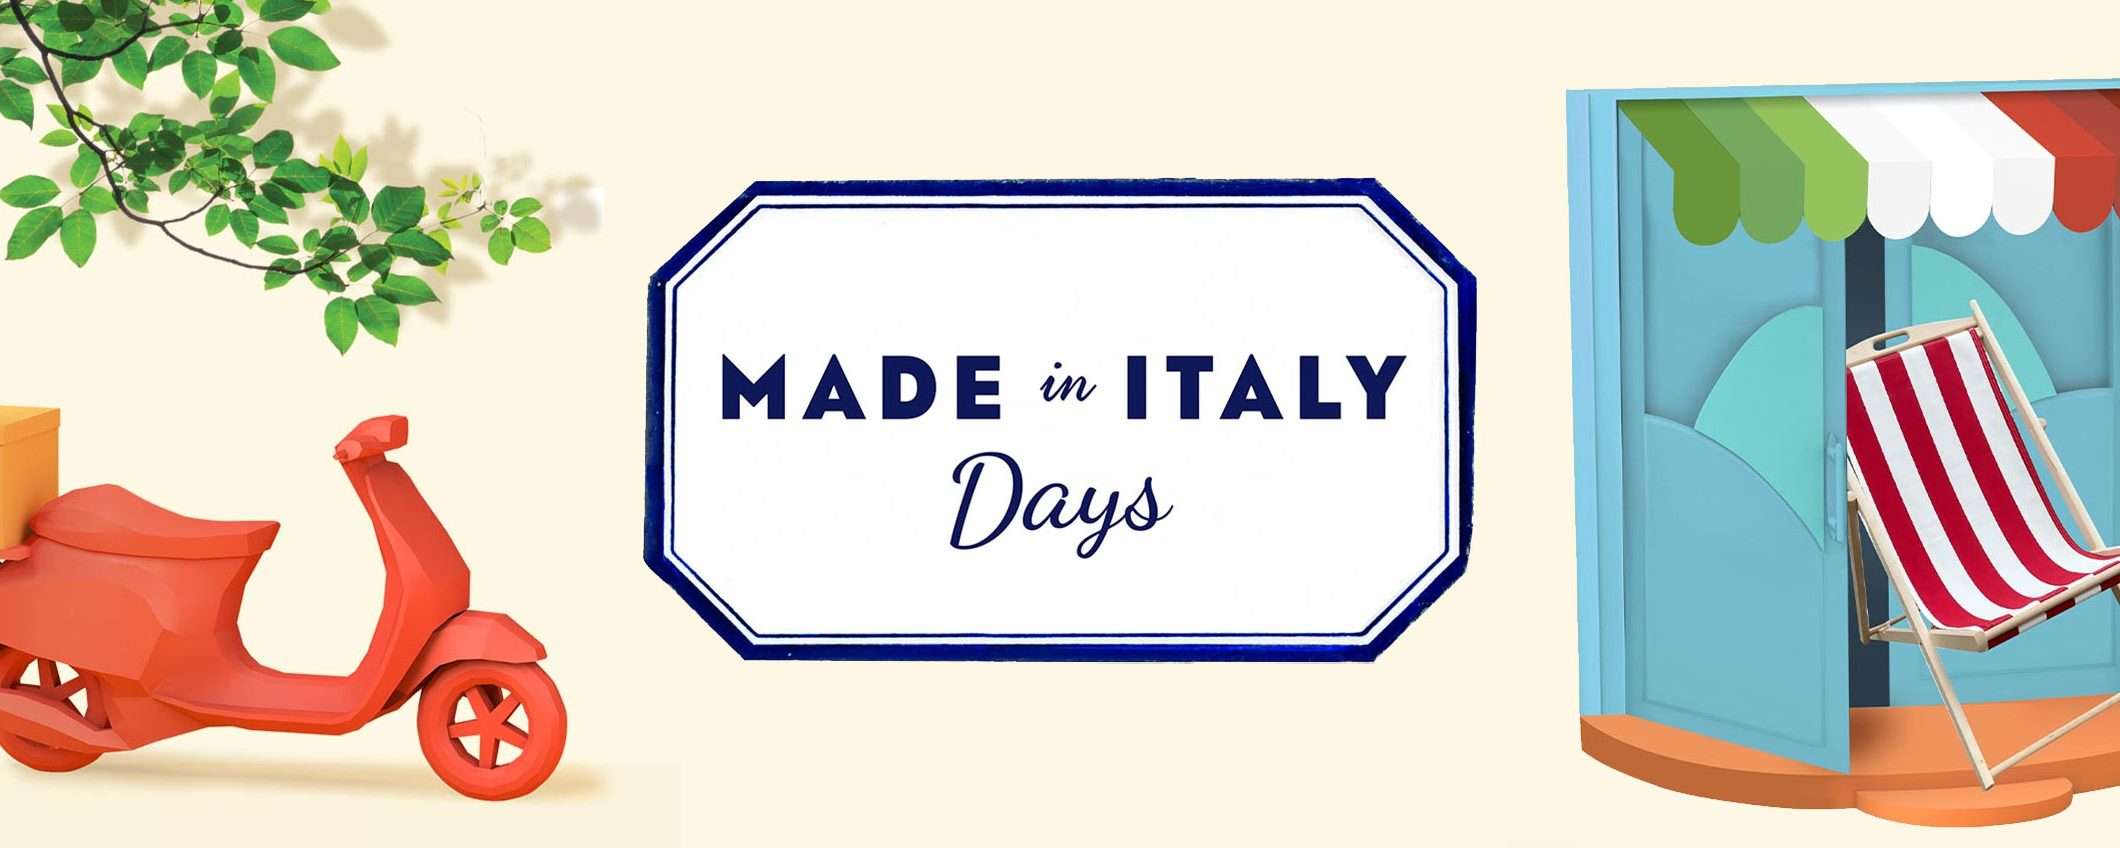 Made in Italy Days: le migliori offerte su Amazon